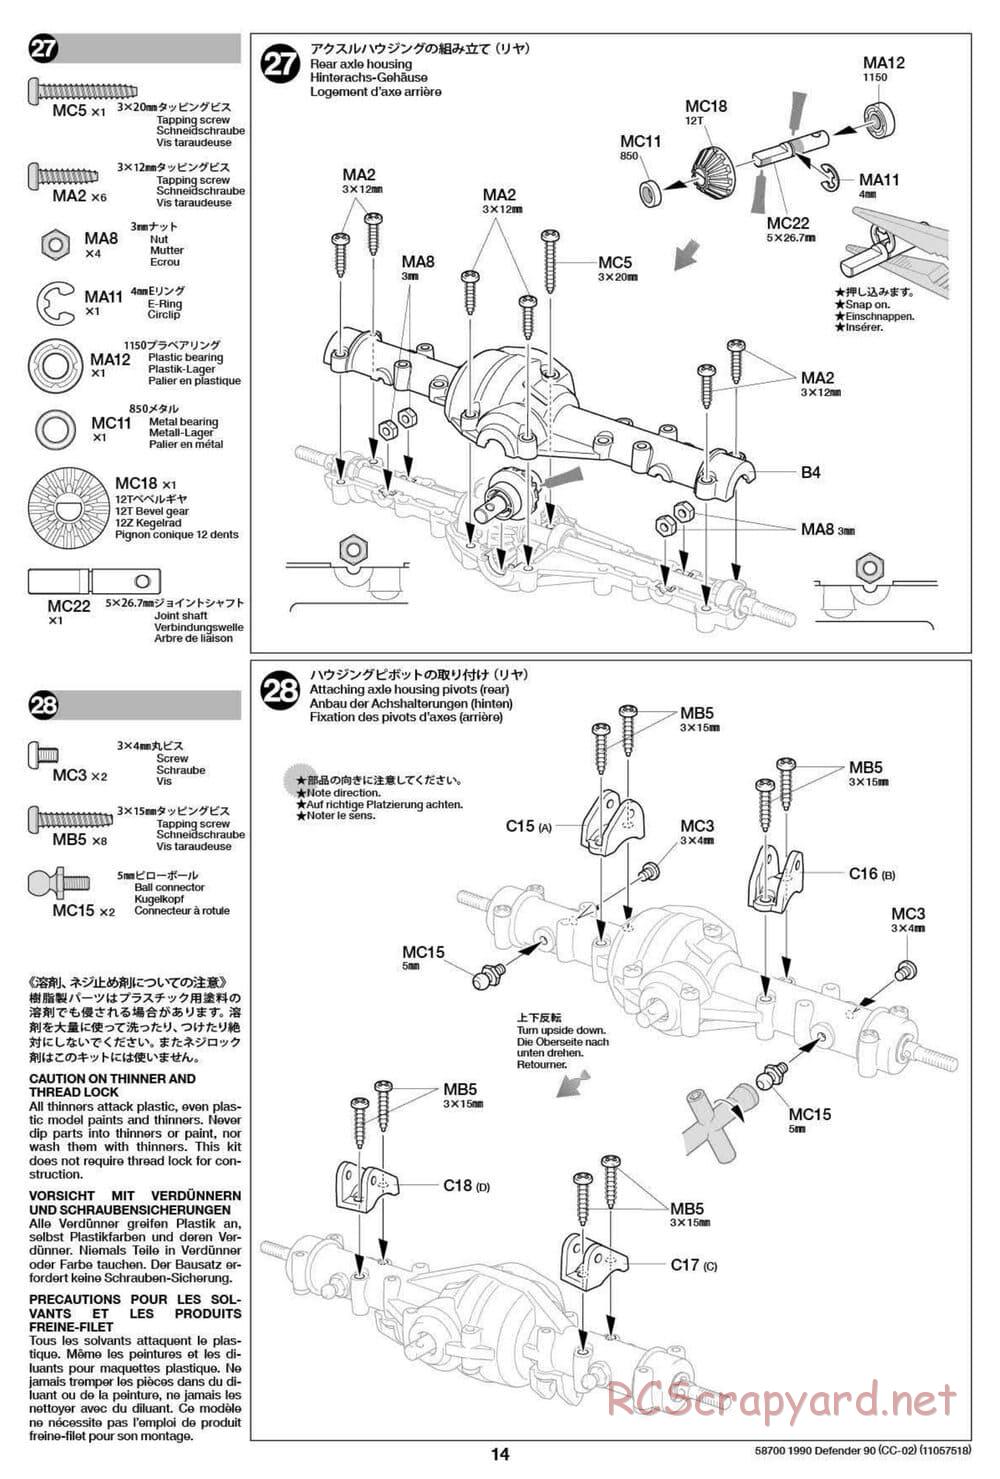 Tamiya - 1990 Land Rover Defender 90 - CC-02 Chassis - Manual - Page 14